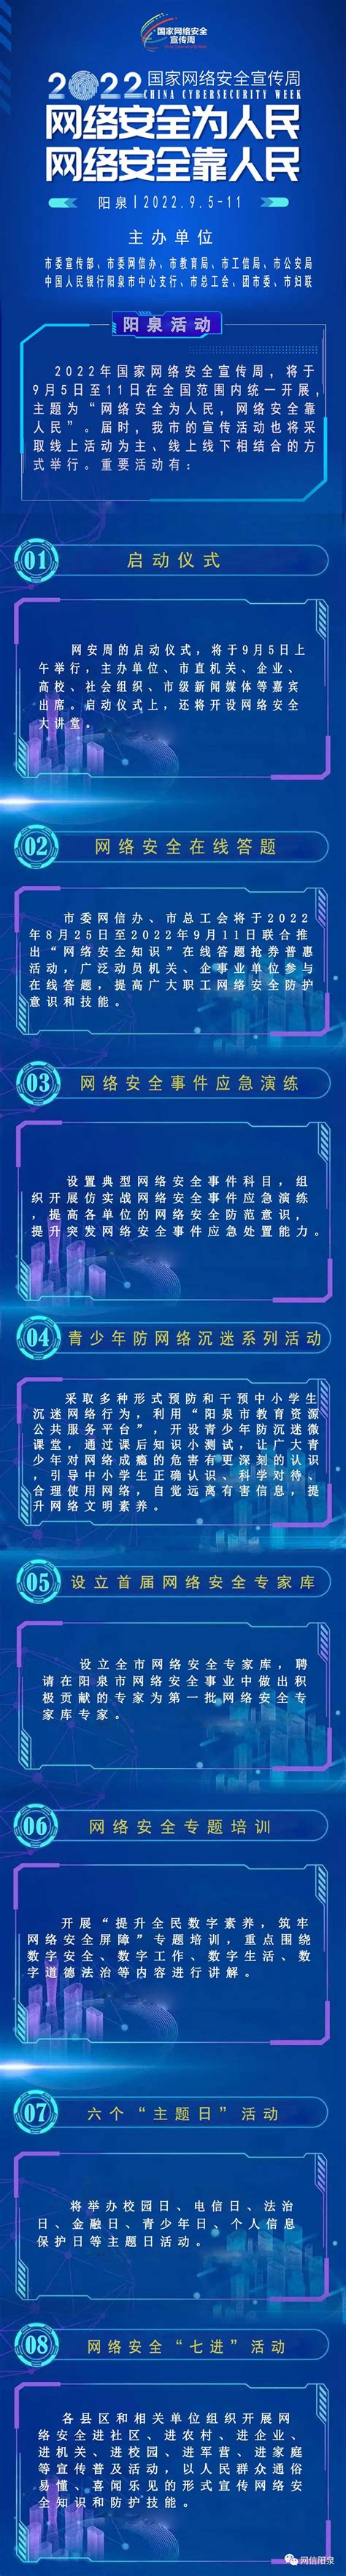 2022年国家网络安全宣传周阳泉活动今日开启_阳泉频道_黄河新闻网